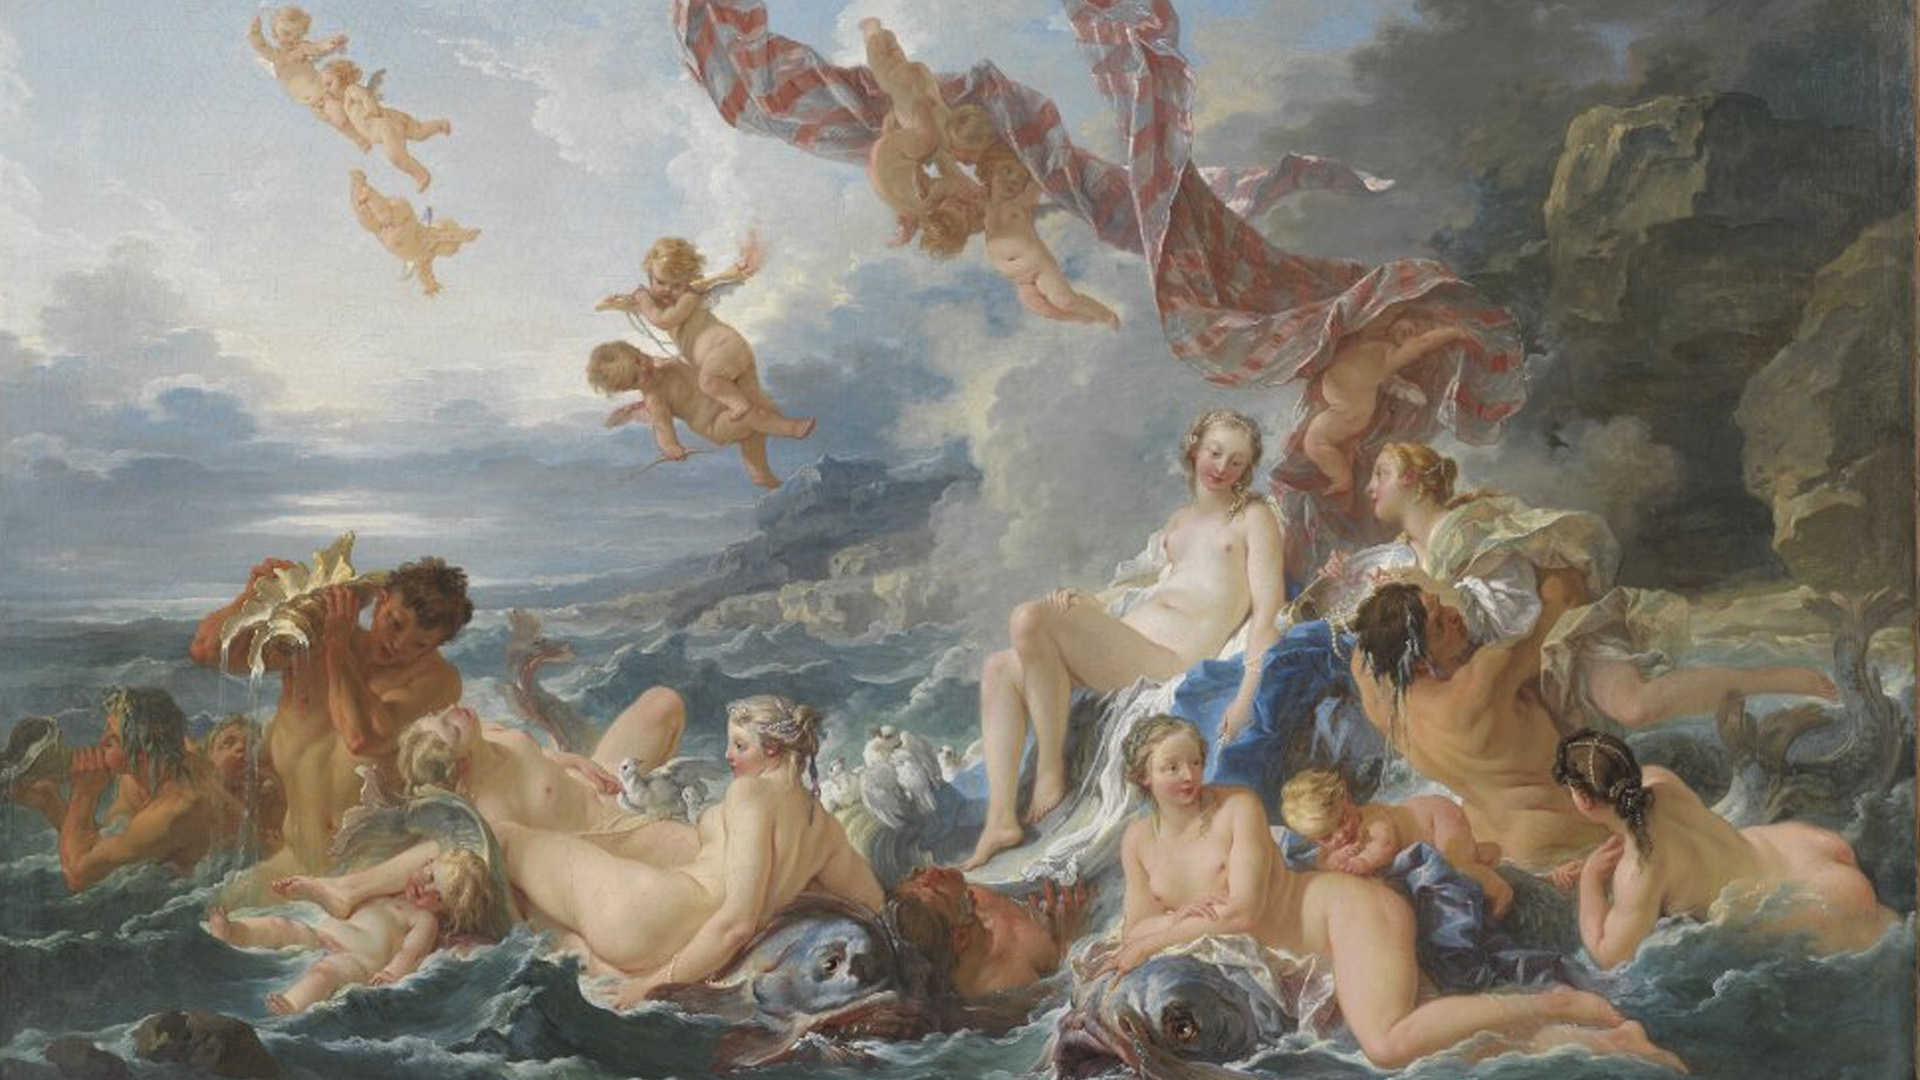 Abbildung von Bouchers Gemälde der Triumph der Venus. Zu sehen sind viele nackte Menschen über einem tosenden Gewässer.